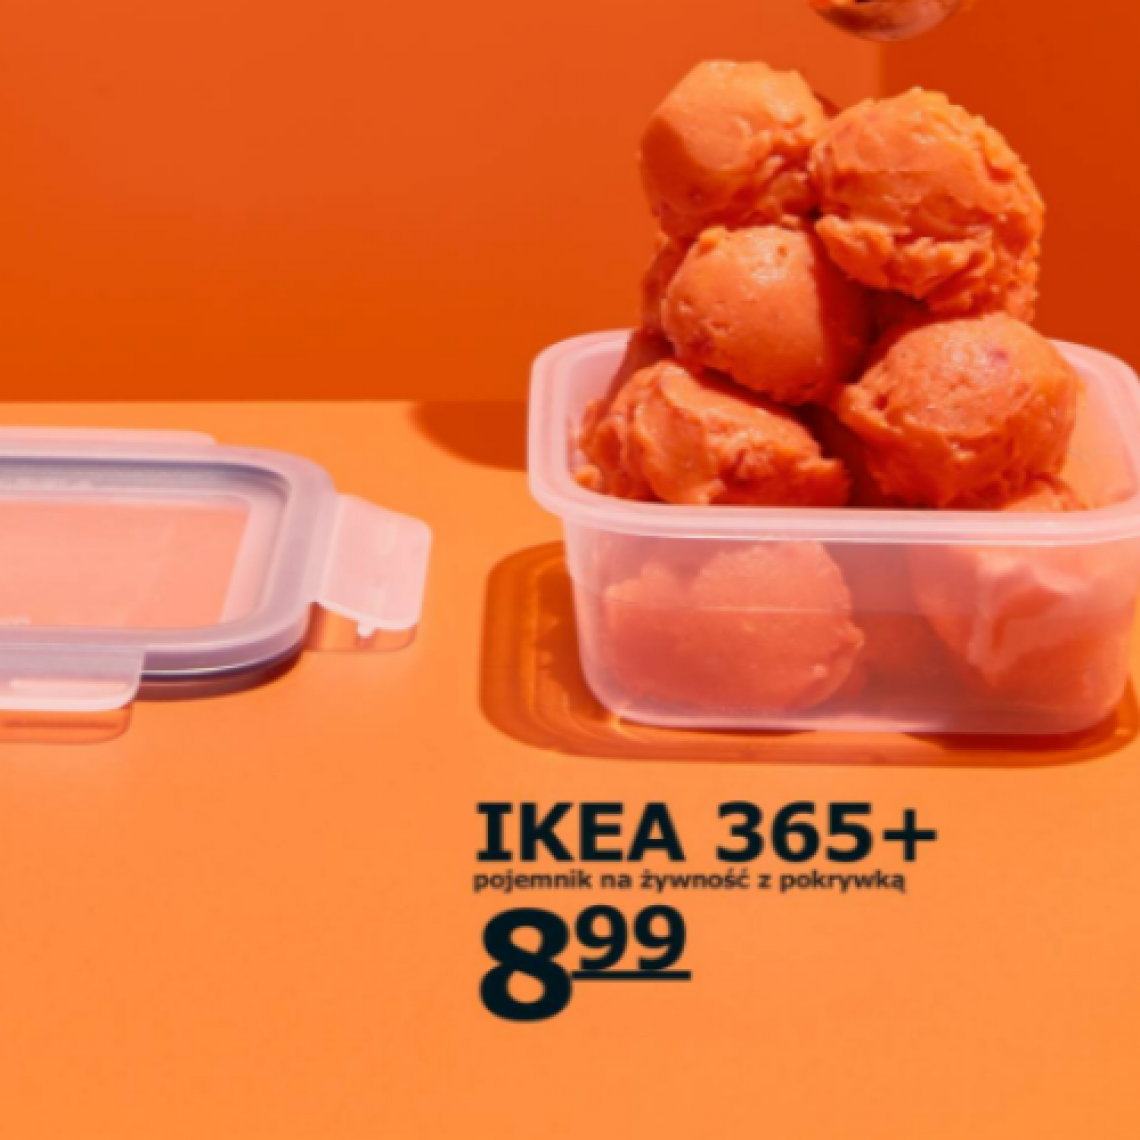 Ikea katalog - pojemnik na żywność